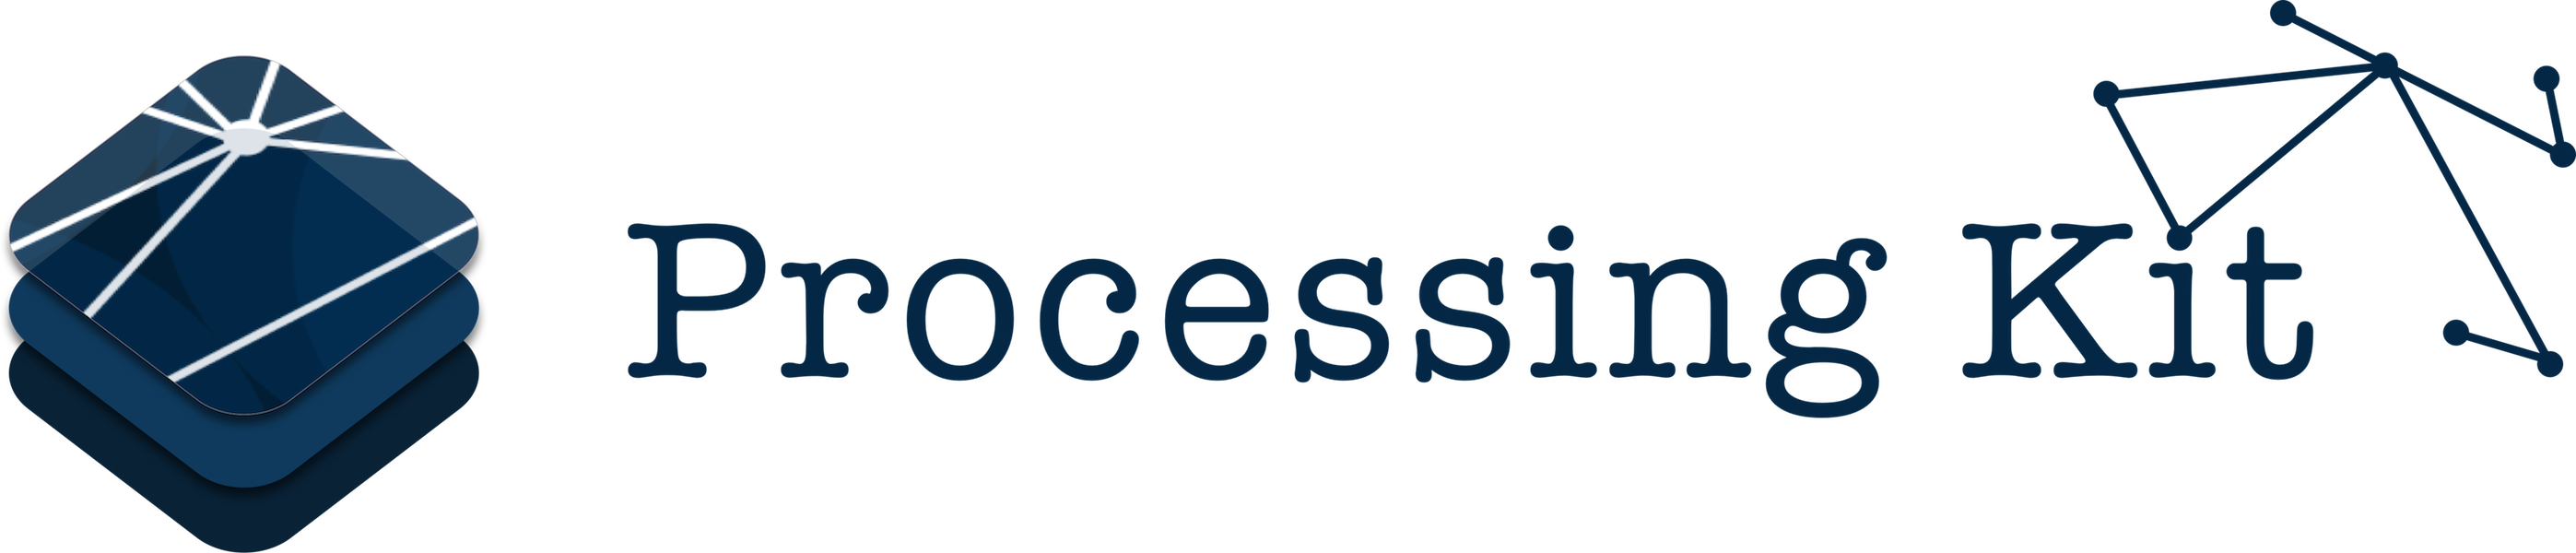 ProcessingKit-Header